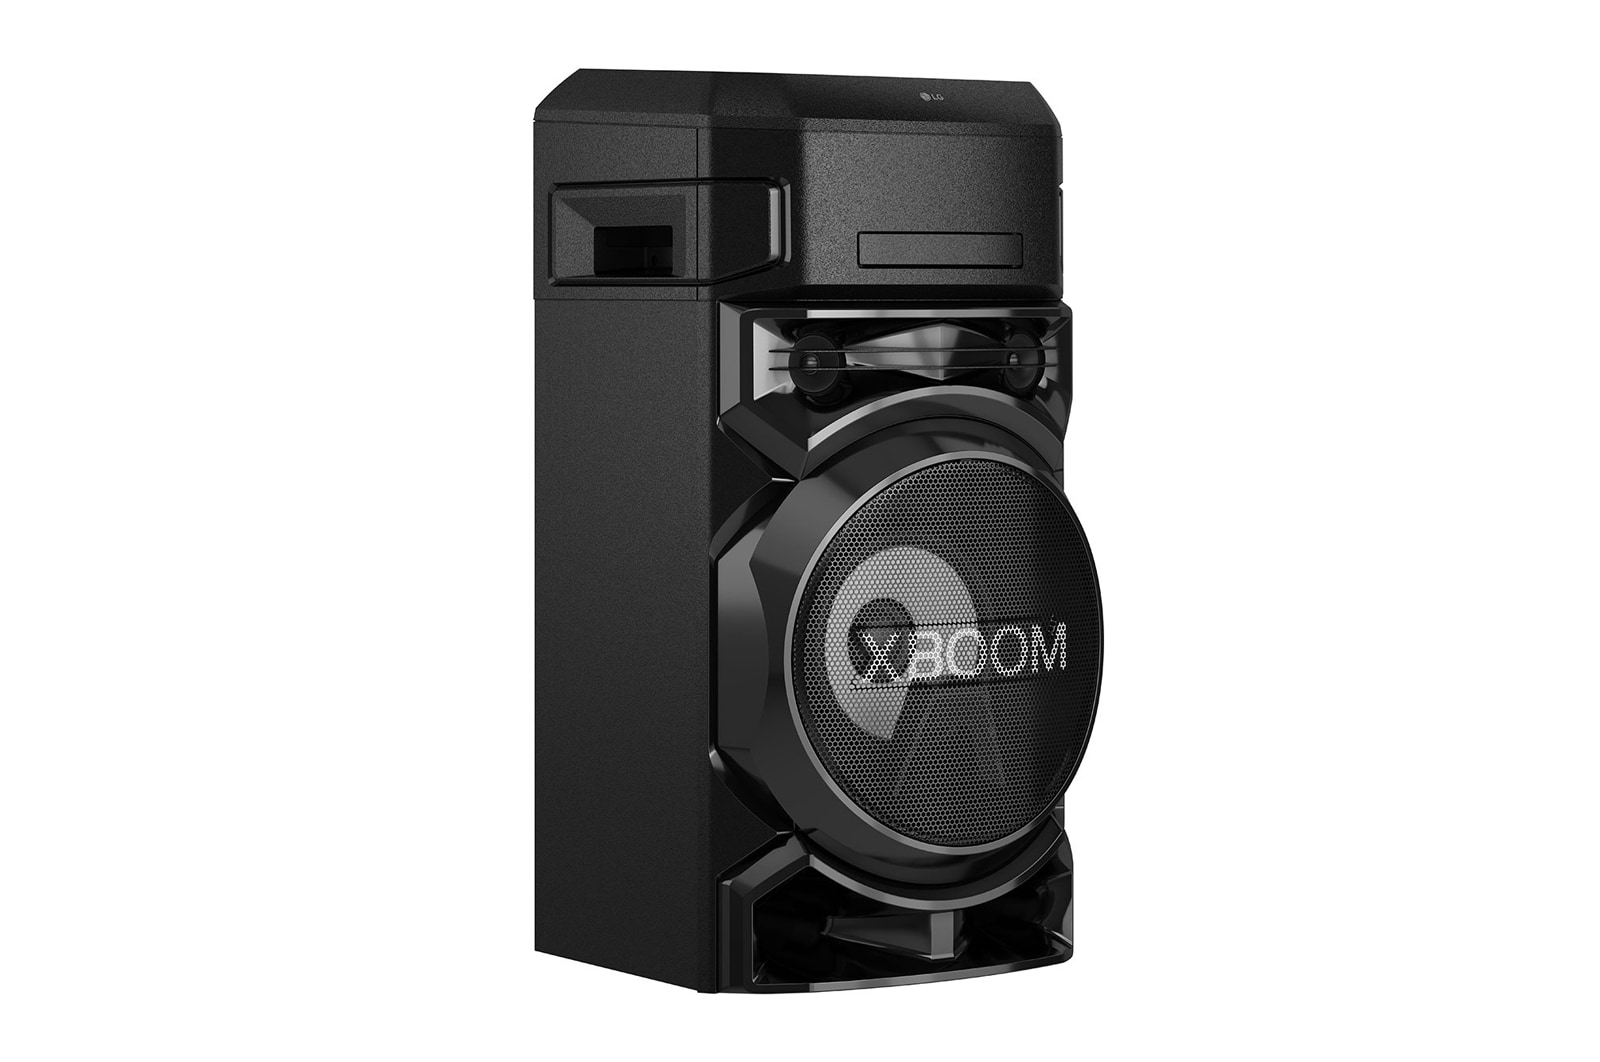 LG XBoom ON5 Bluetooth Speaker Black